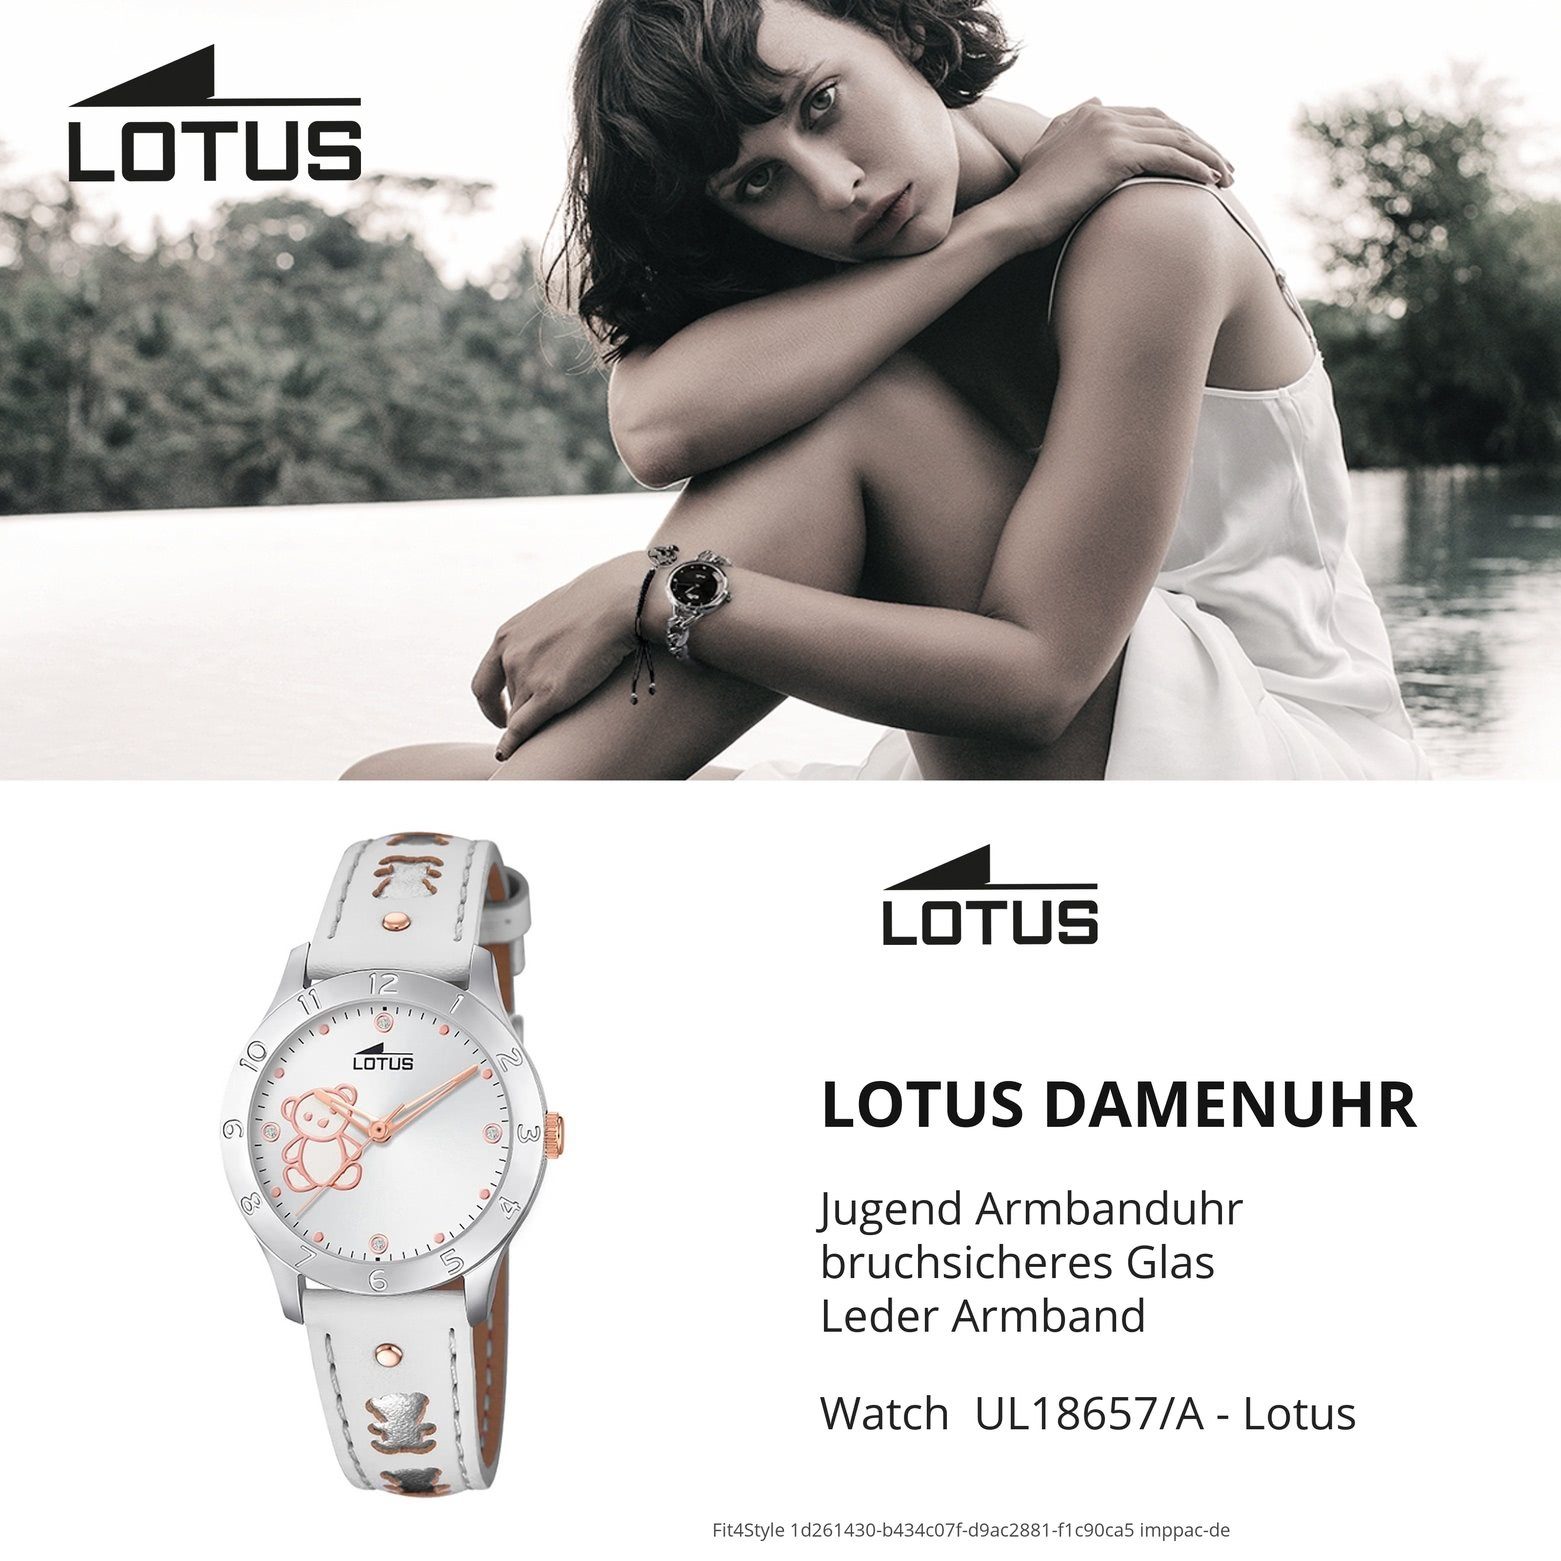 Kinder Kinderuhren Lotus Quarzuhr UL18657/A LOTUS Jugend Uhr Elegant 18657/A Leder, Jugend Armbanduhr rund, mittel (ca. 32mm), L